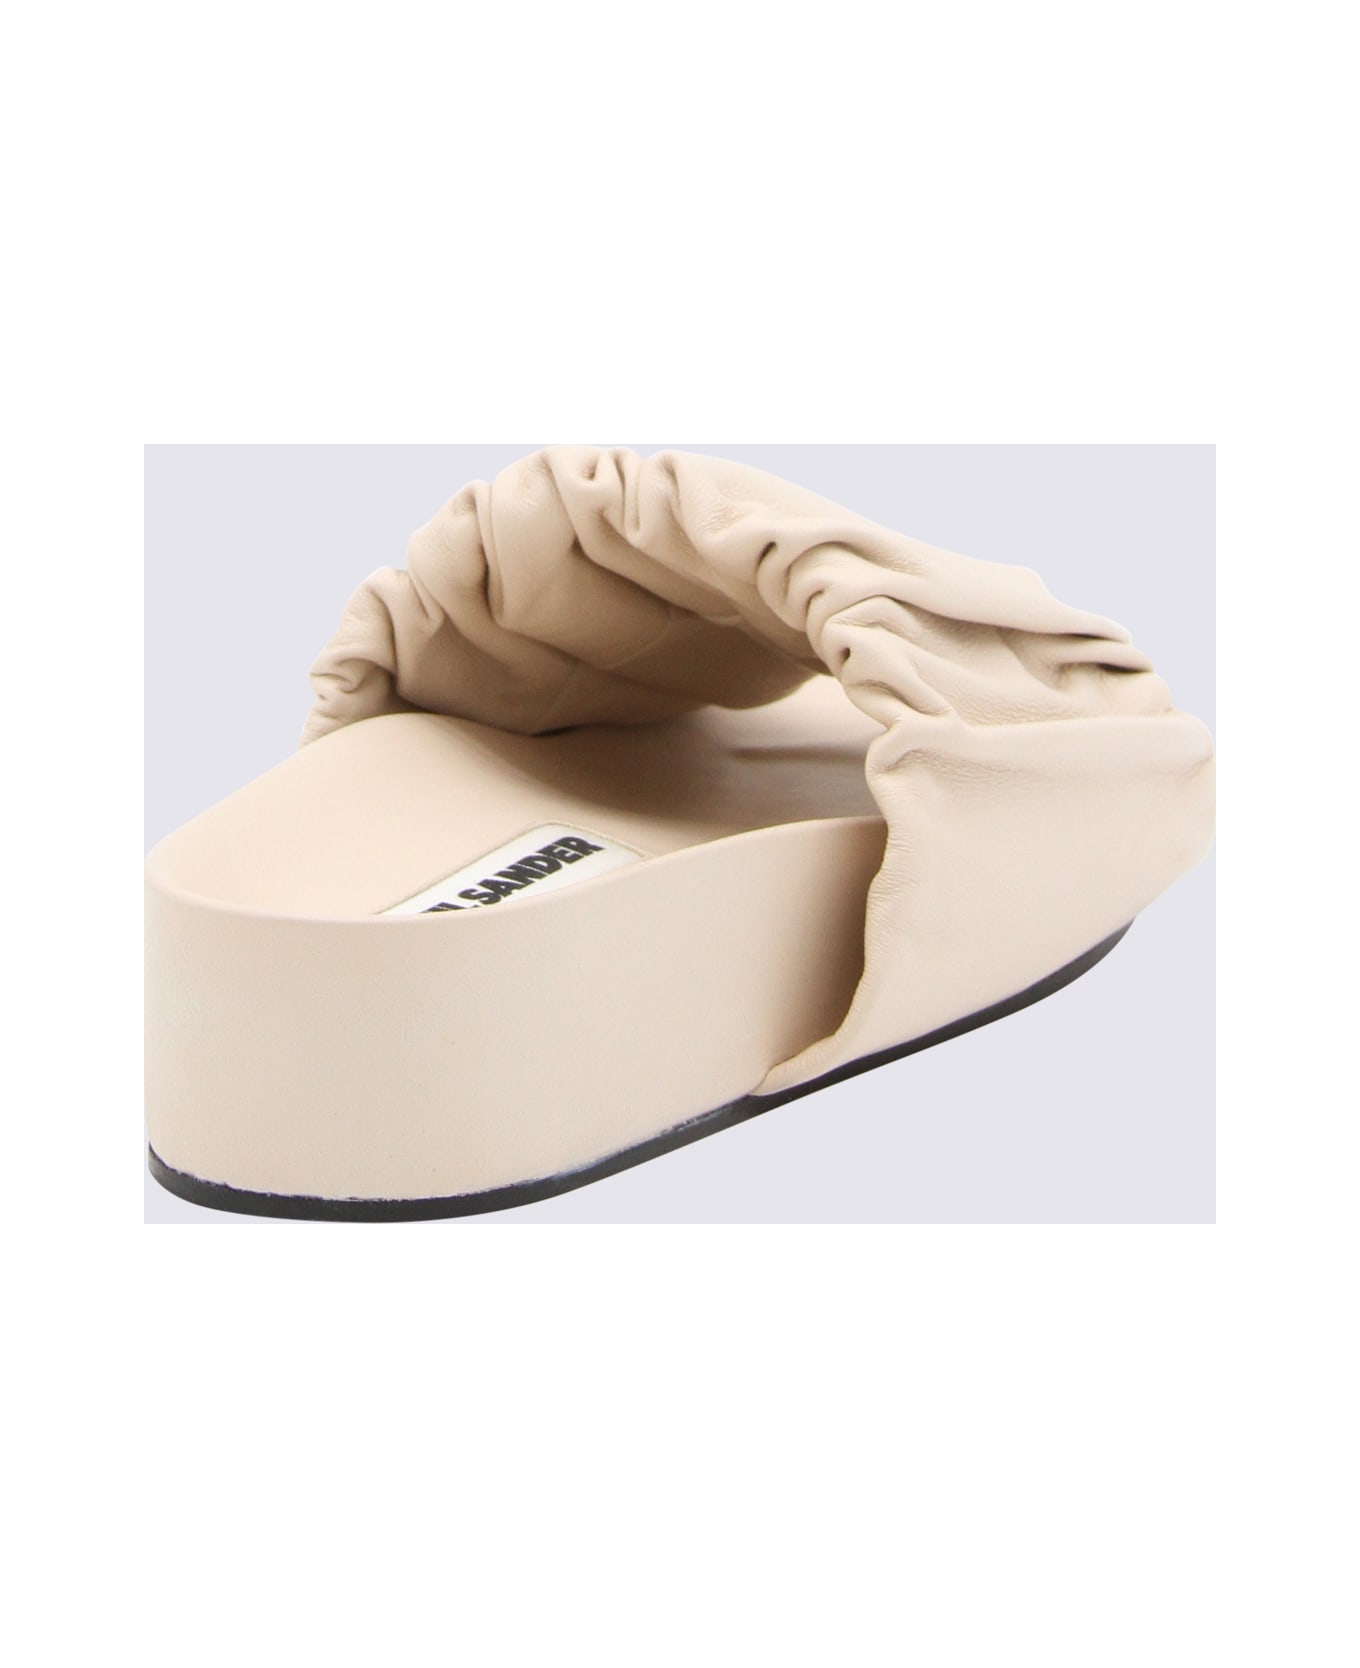 Jil Sander Light Beige Leather Sandals - LIGHT PINK サンダル